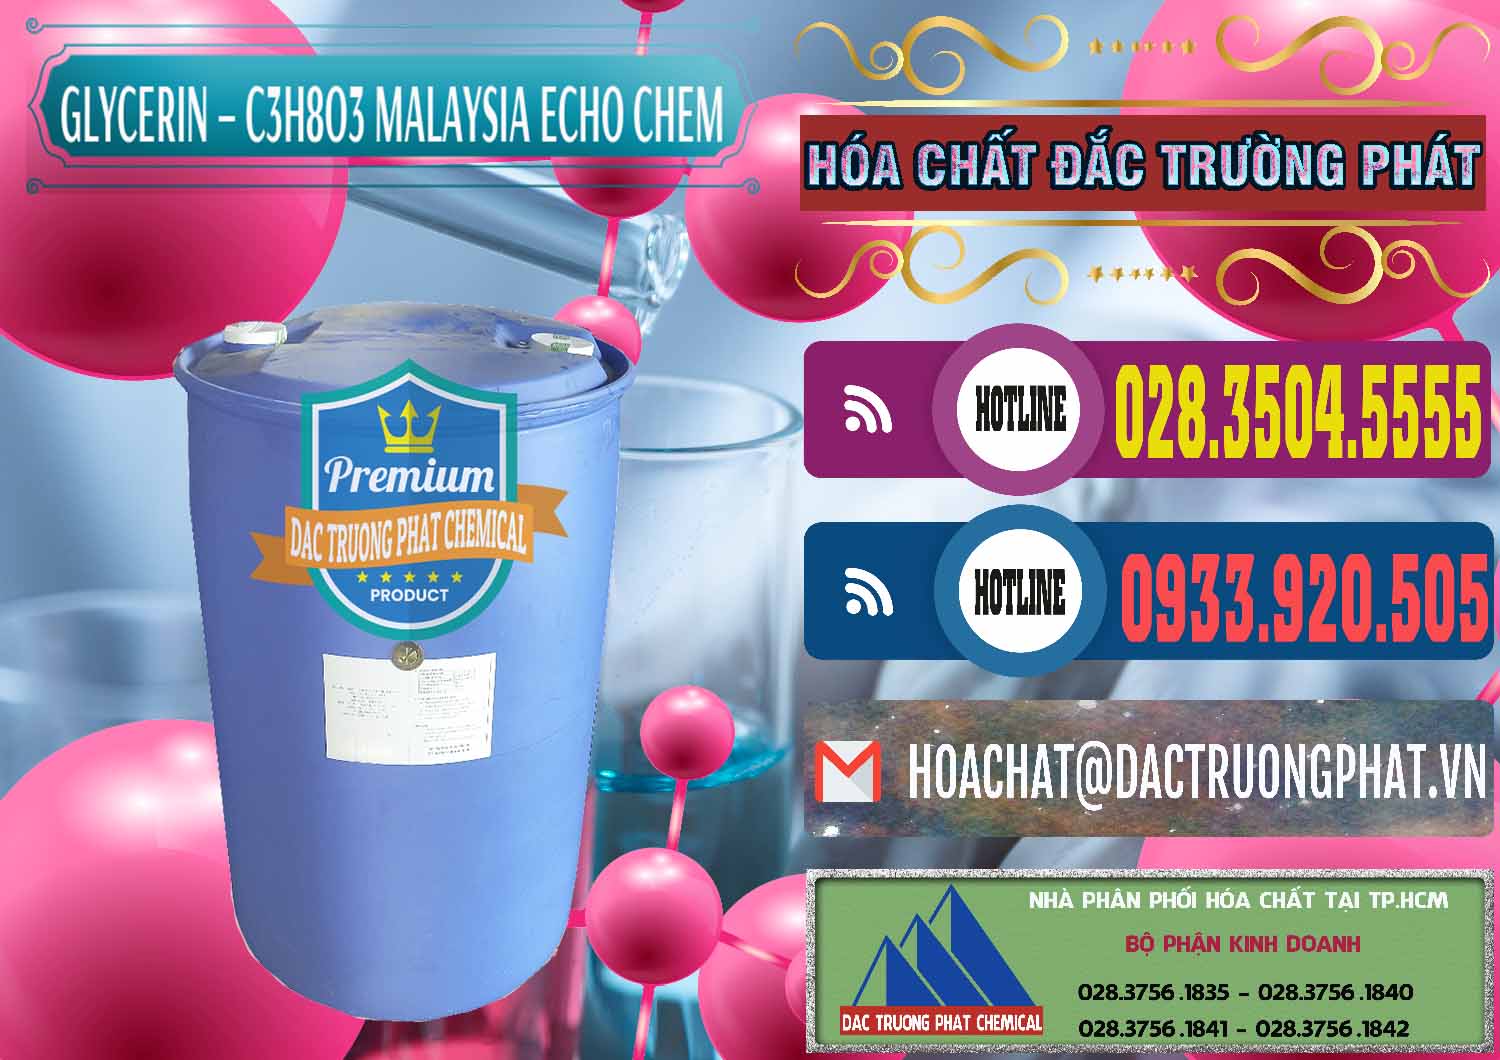 Cung cấp _ bán C3H8O3 - Glycerin 99.7% Echo Chem Malaysia - 0273 - Cty bán - cung cấp hóa chất tại TP.HCM - muabanhoachat.com.vn